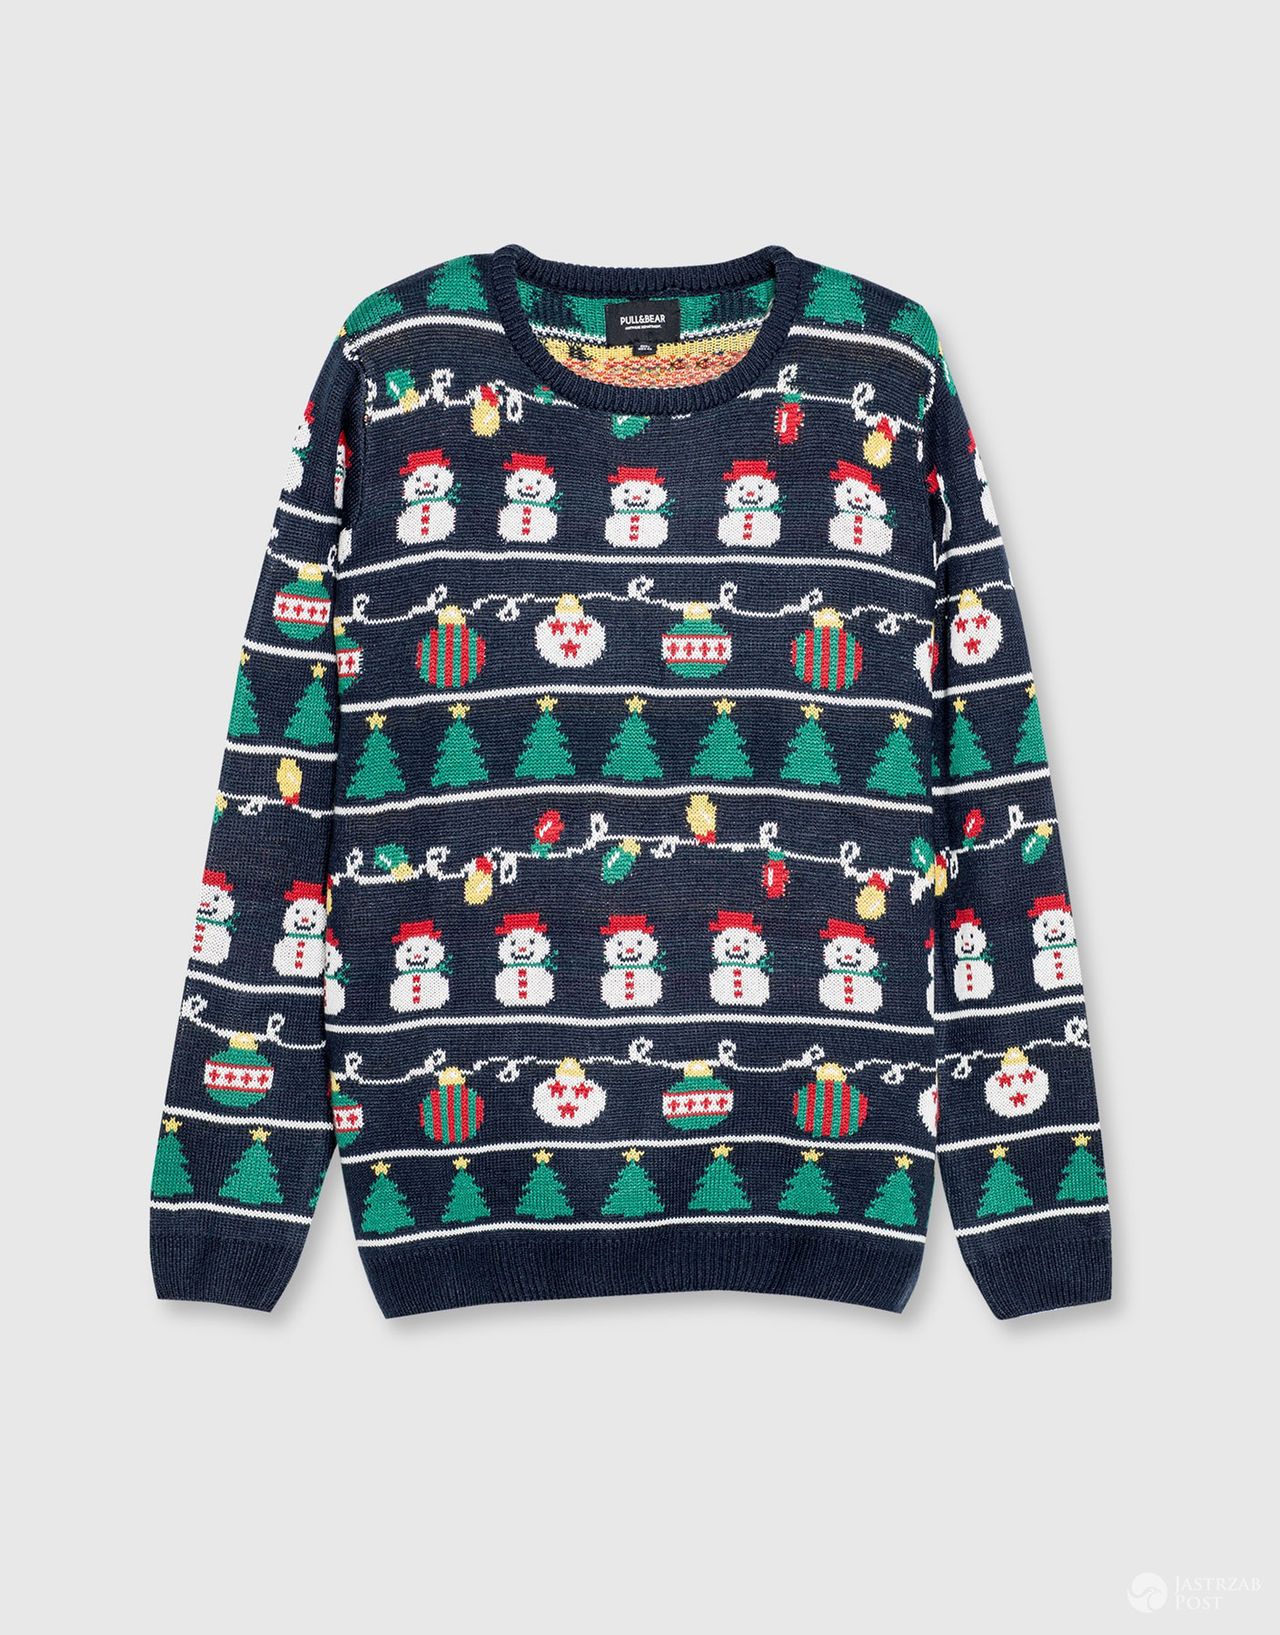 świąteczny sweter męski Pull & Bear, cena: 119zł